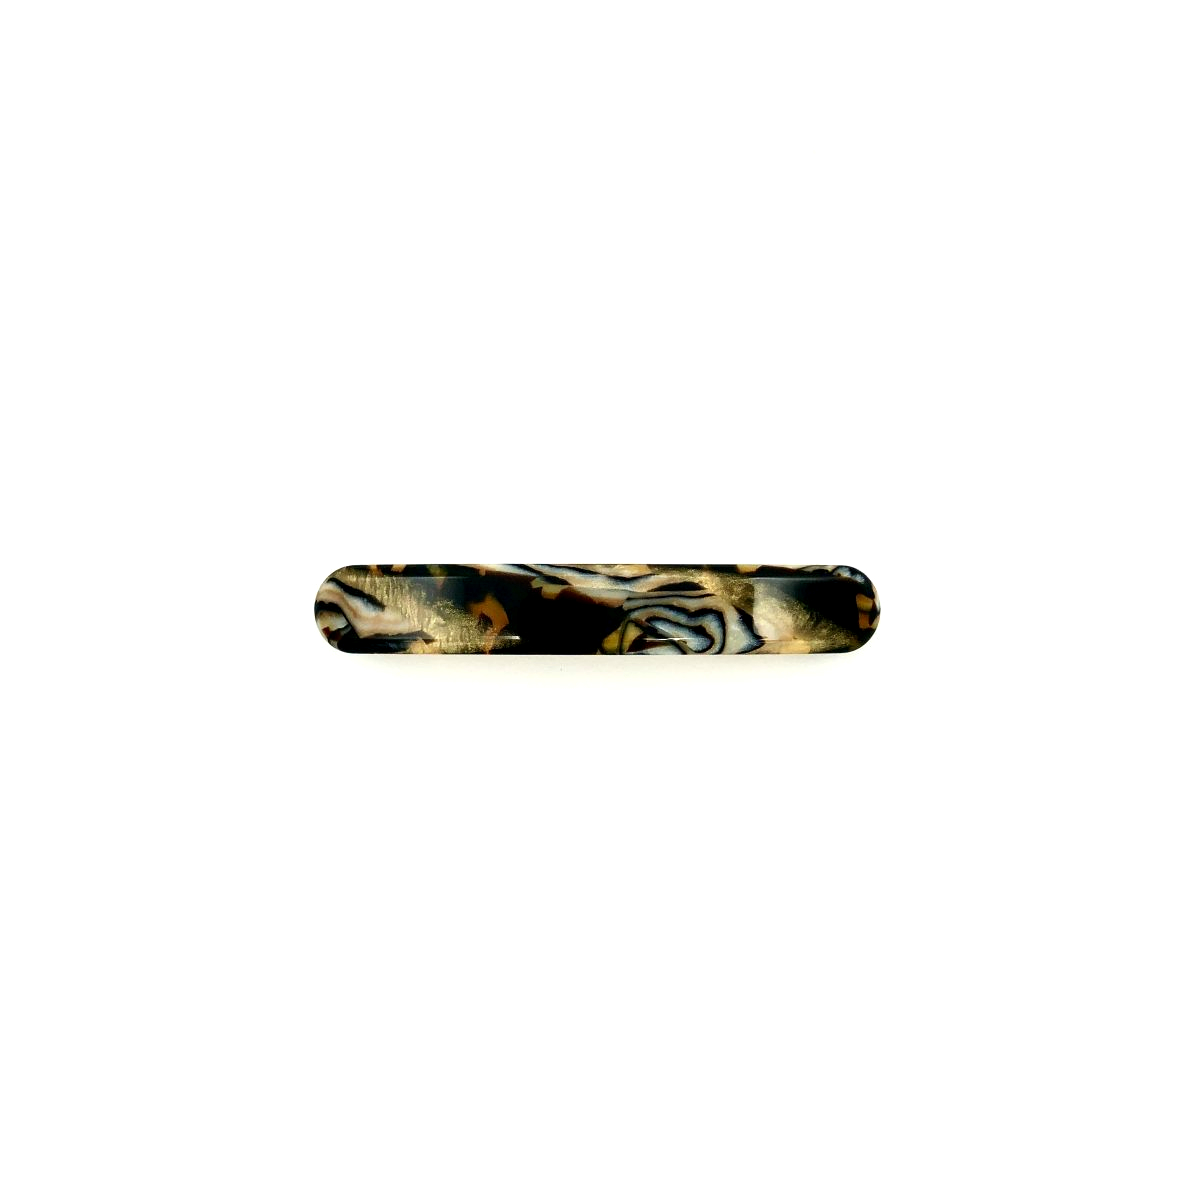 Haarspange gold/schwarz - klein, flach - 7,7 cm